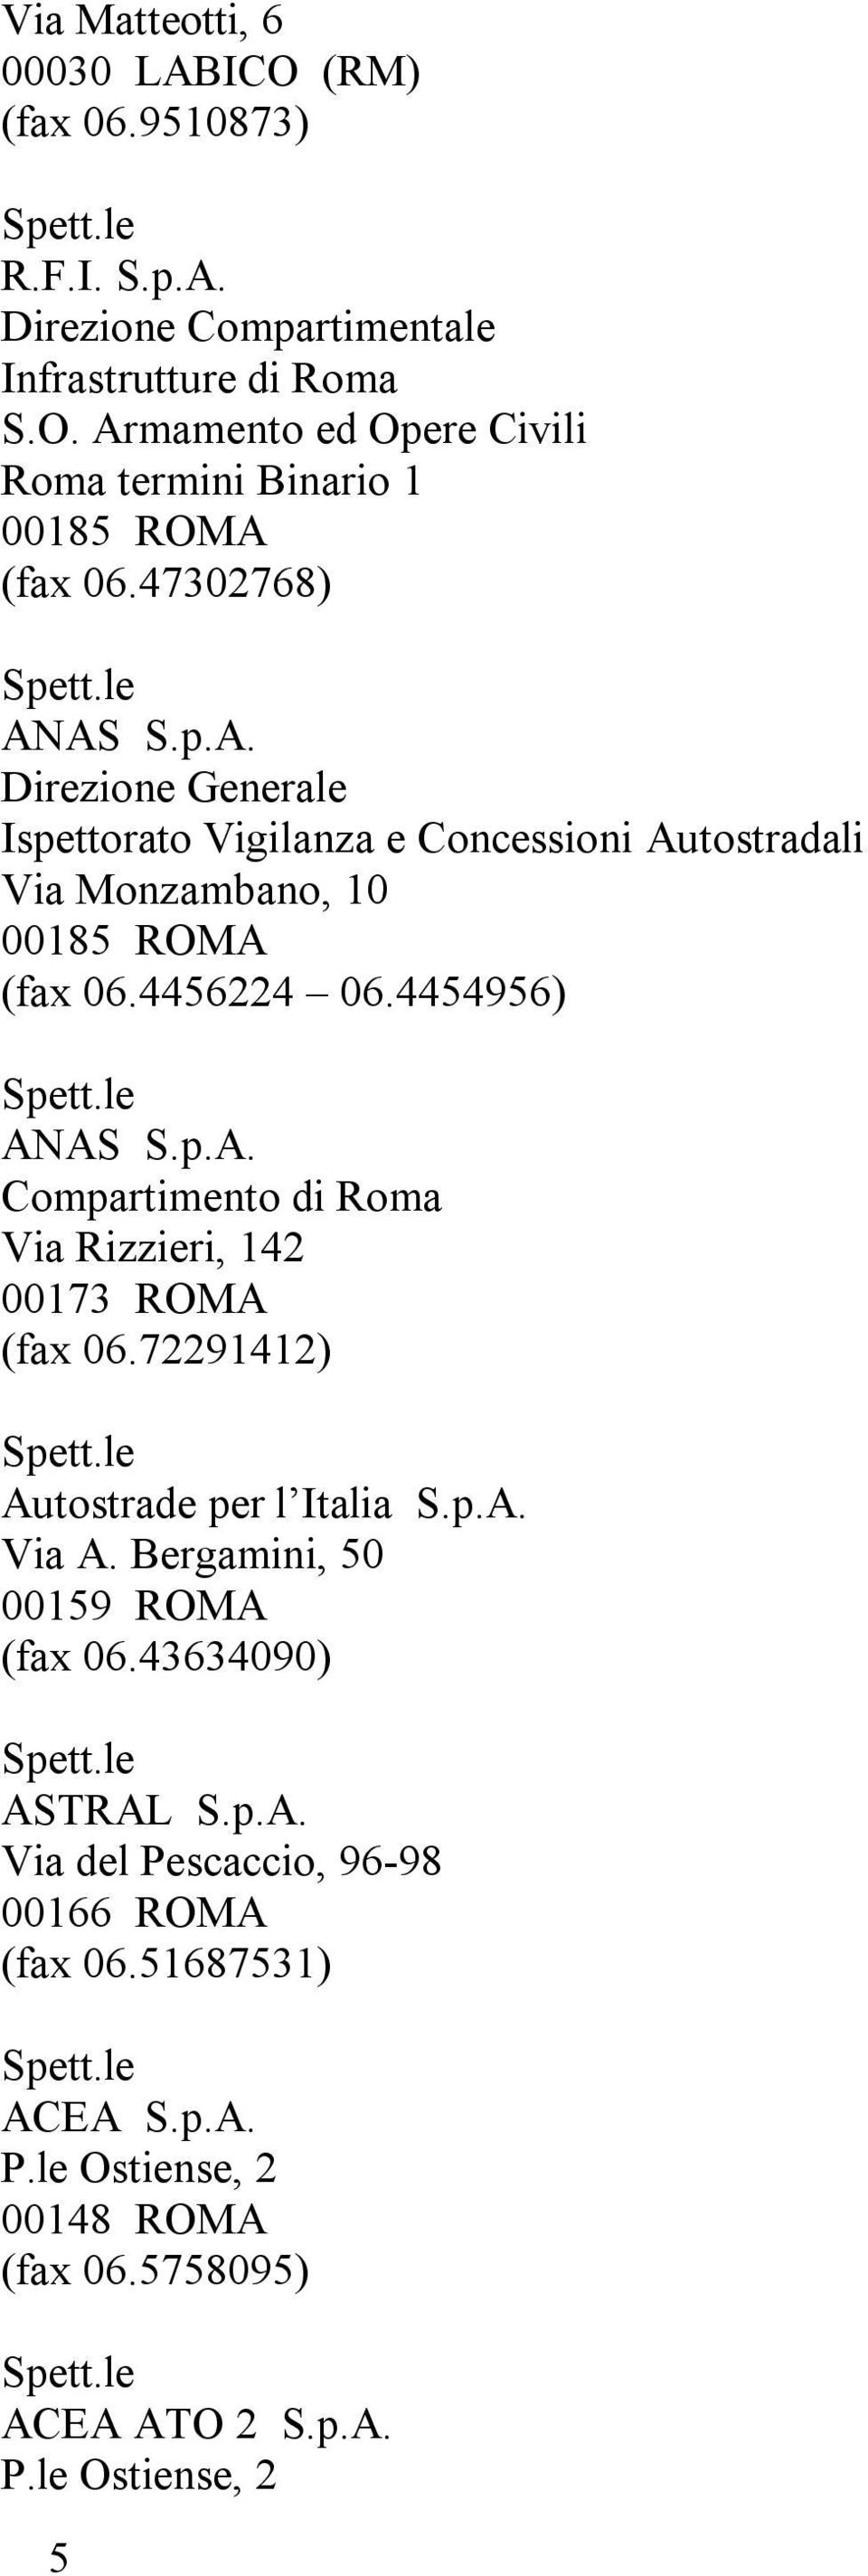 72291412) Autostrade per l Italia S.p.A. Via A. Bergamini, 50 00159 ROMA (fax 06.43634090) ASTRAL S.p.A. Via del Pescaccio, 96-98 00166 ROMA (fax 06.